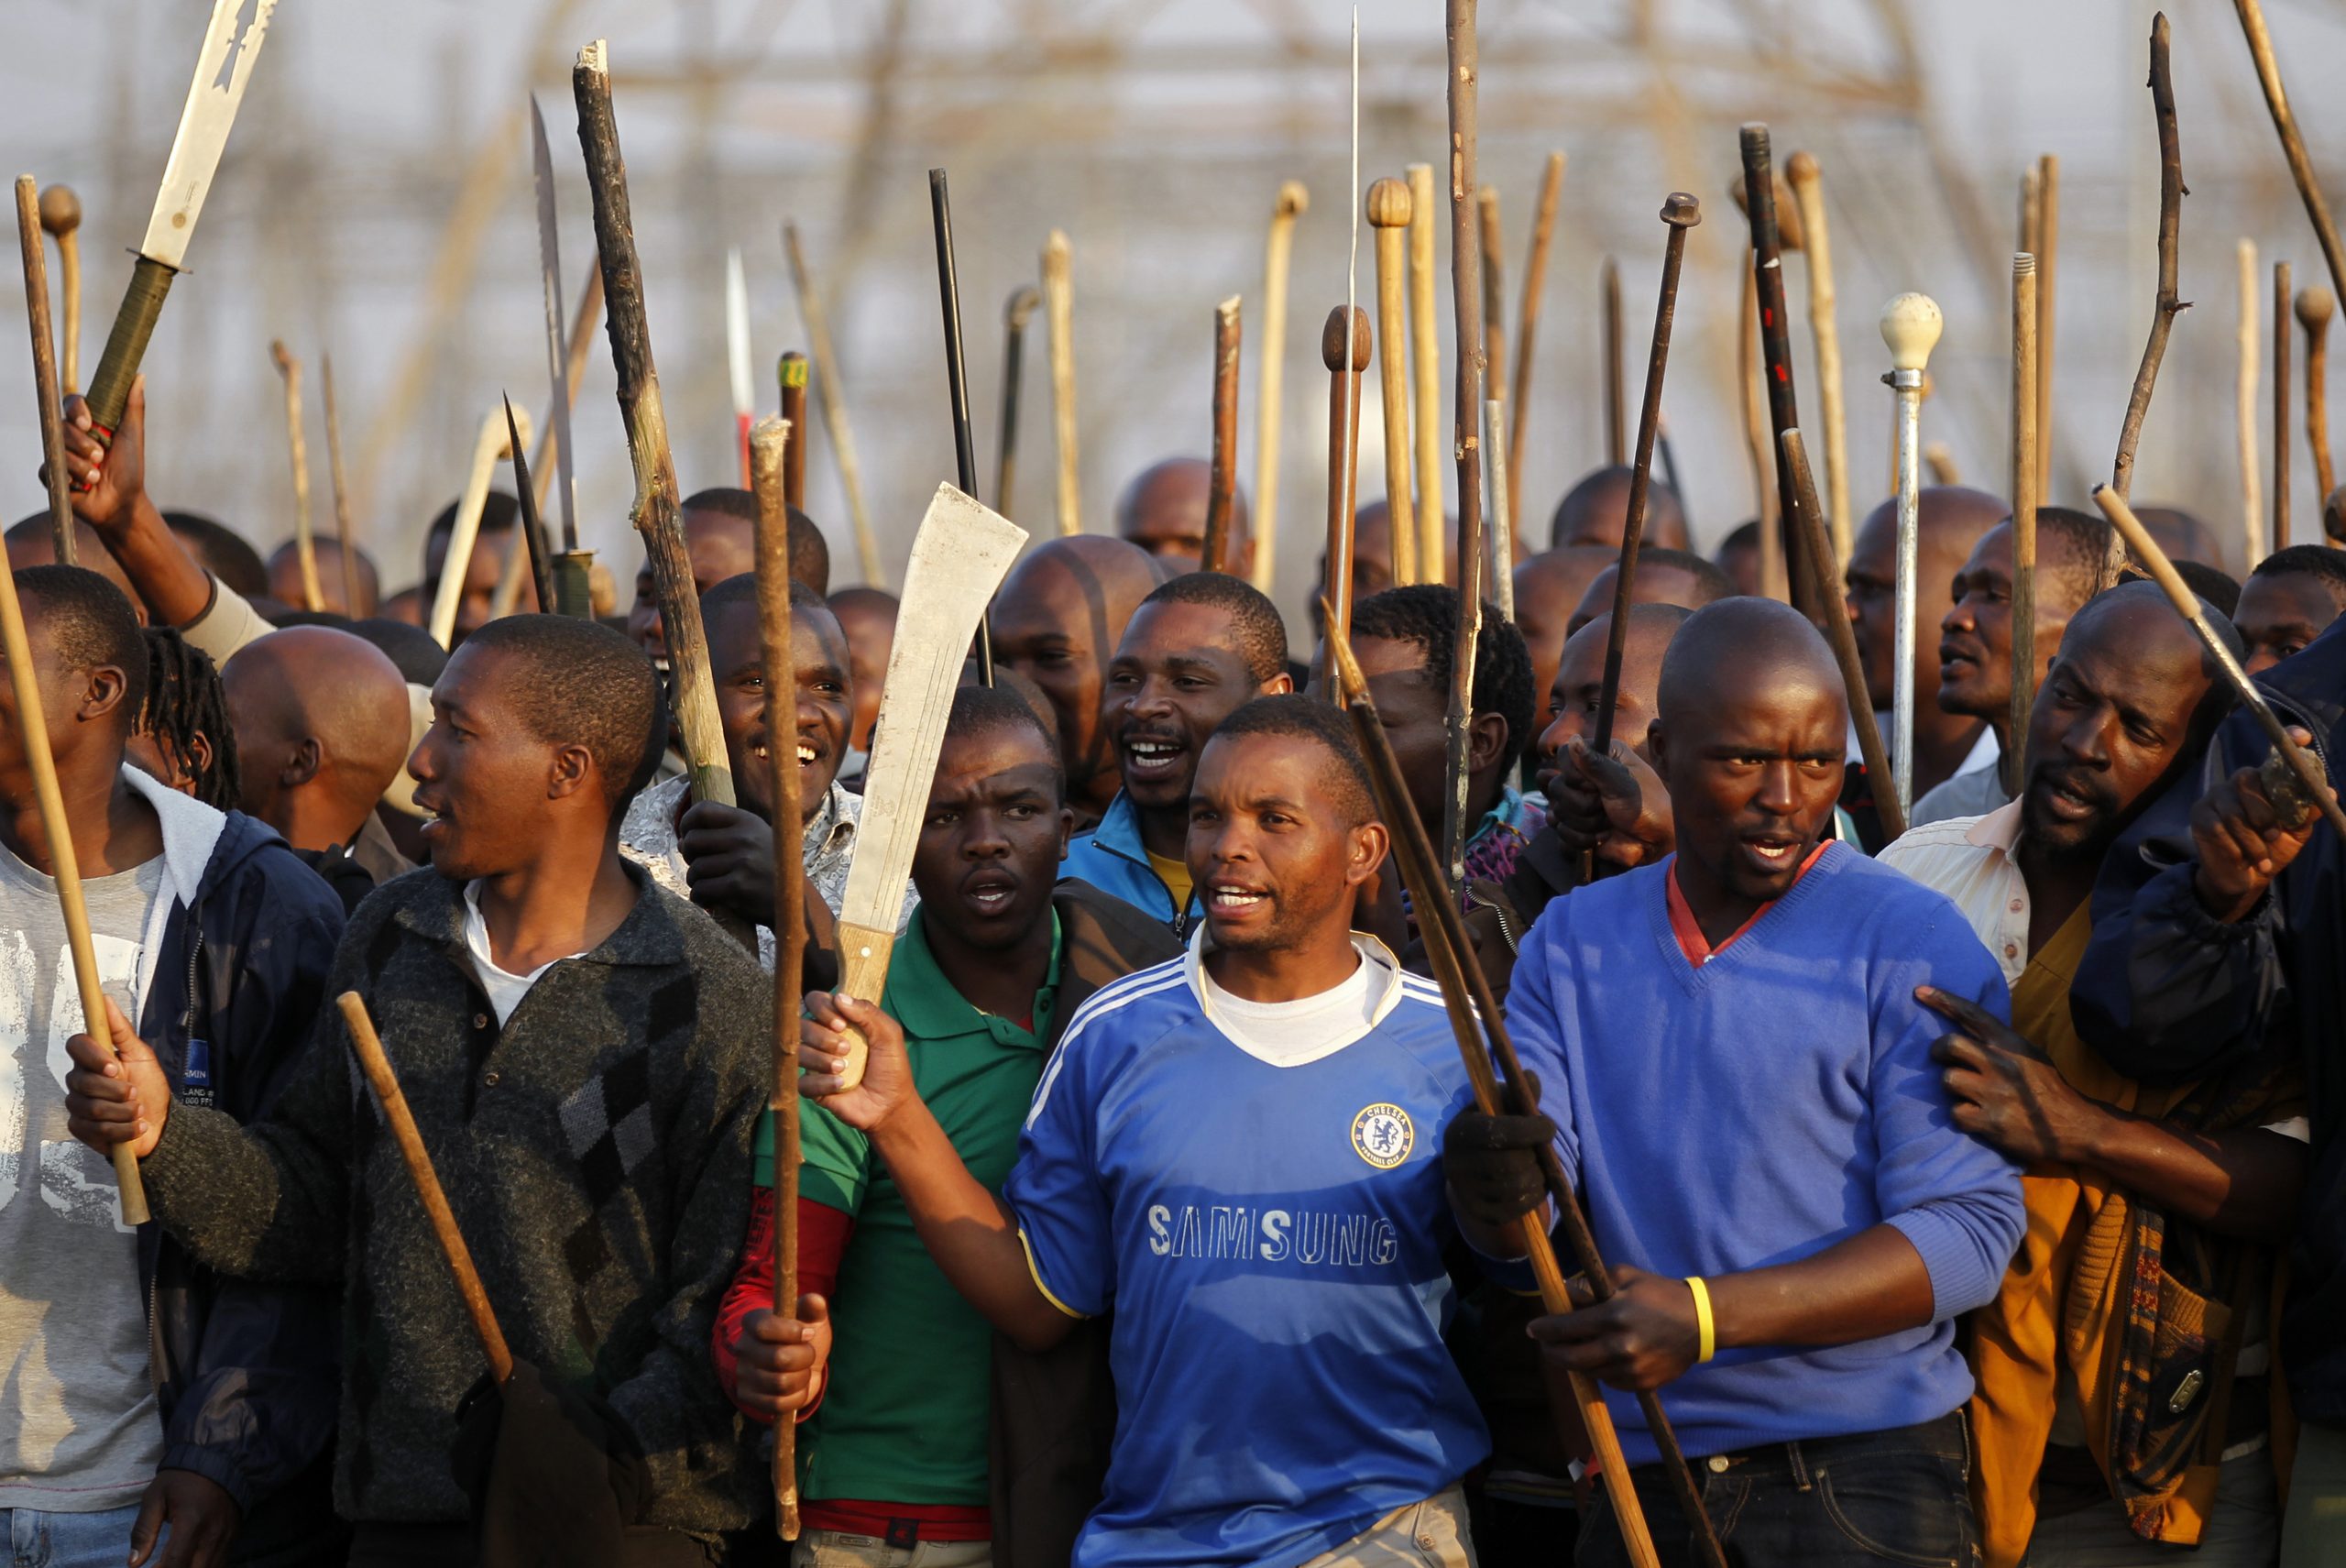 Südafrika: Die ANC-Regierung tötet 34 MinenarbeiterInnen